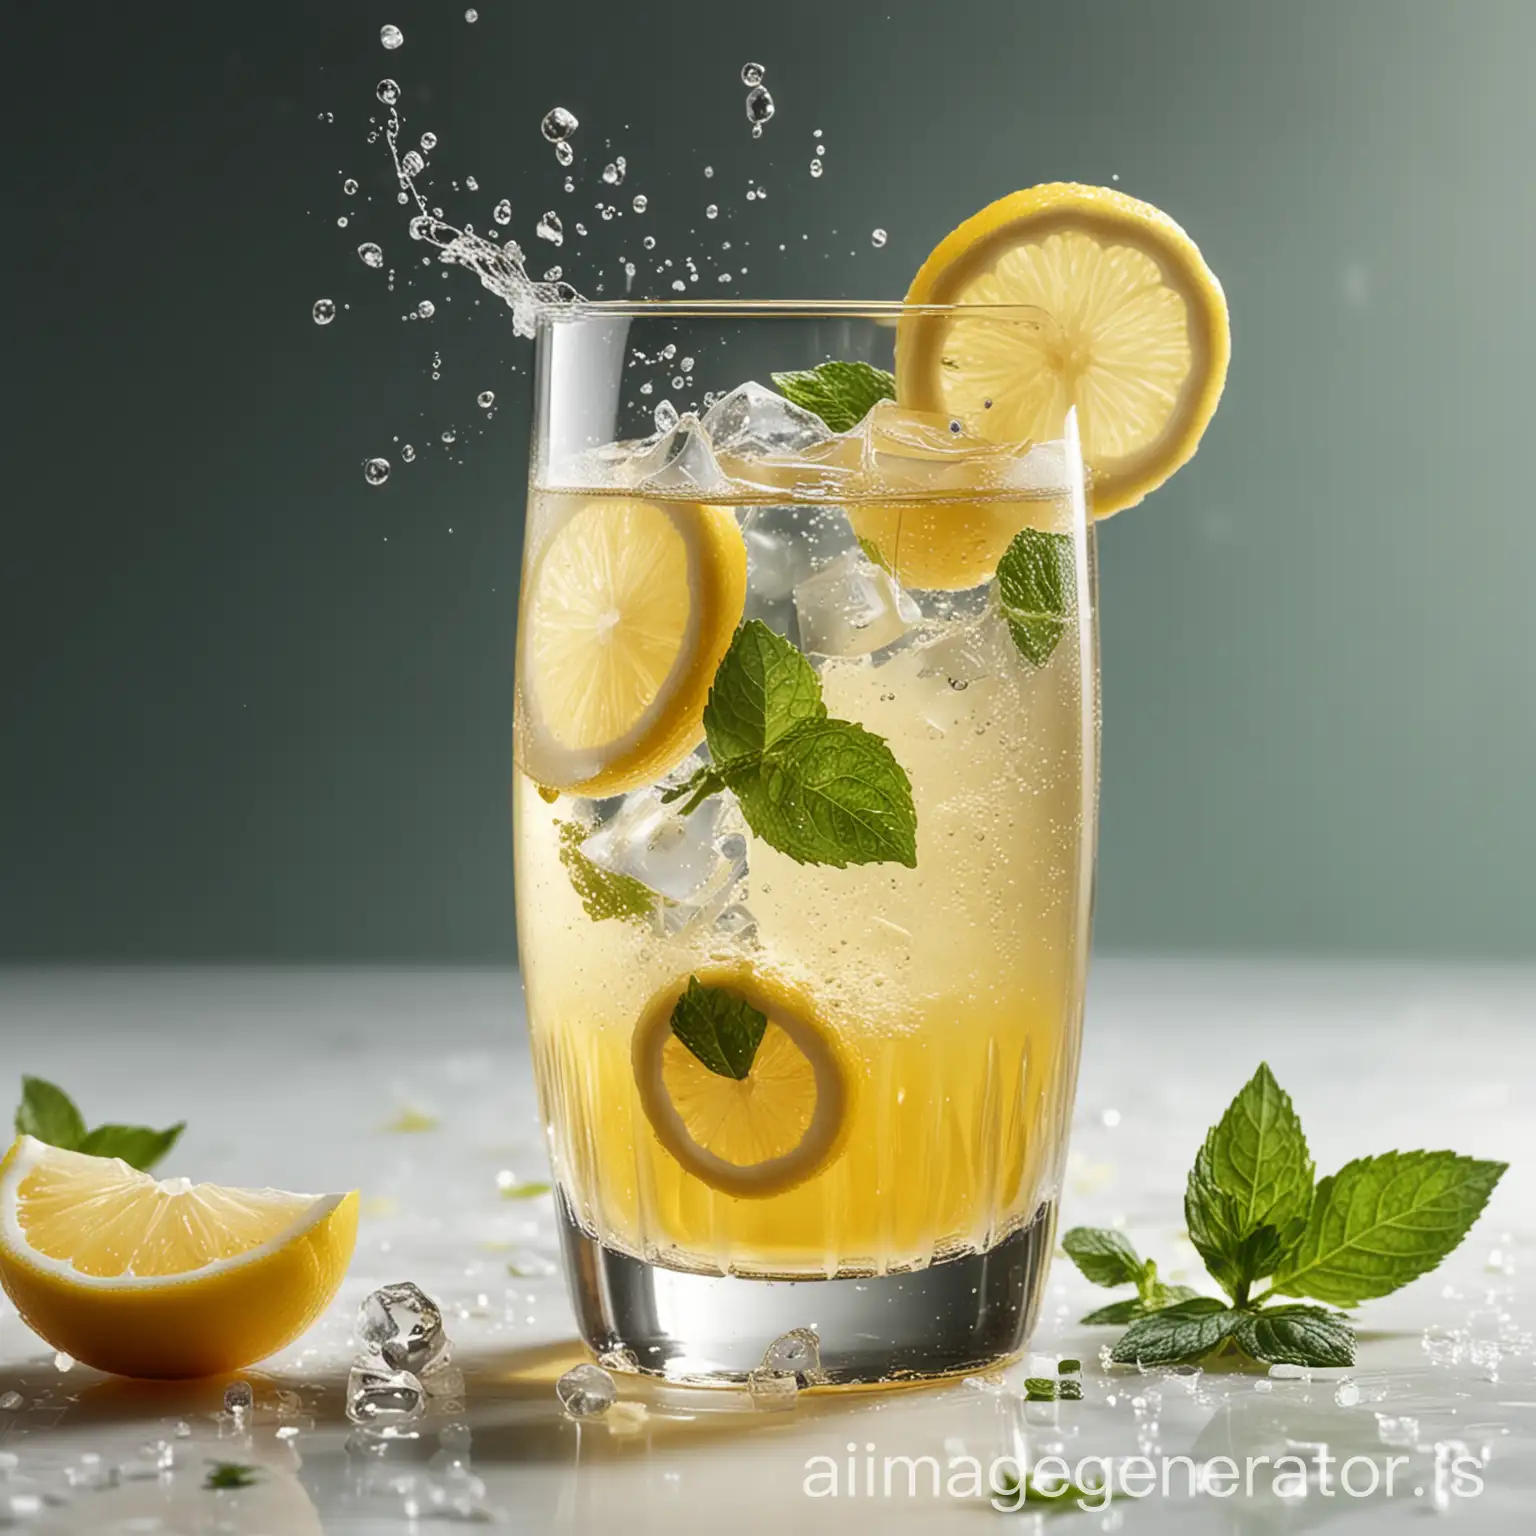 一个柠檬起泡酒鸡尾酒，没有背景，杯子中是带着气泡的淡黄色鸡尾酒，充满了冰块，有几片柠檬和薄荷叶。酒杯内液体激荡出来，更有动态的感觉。